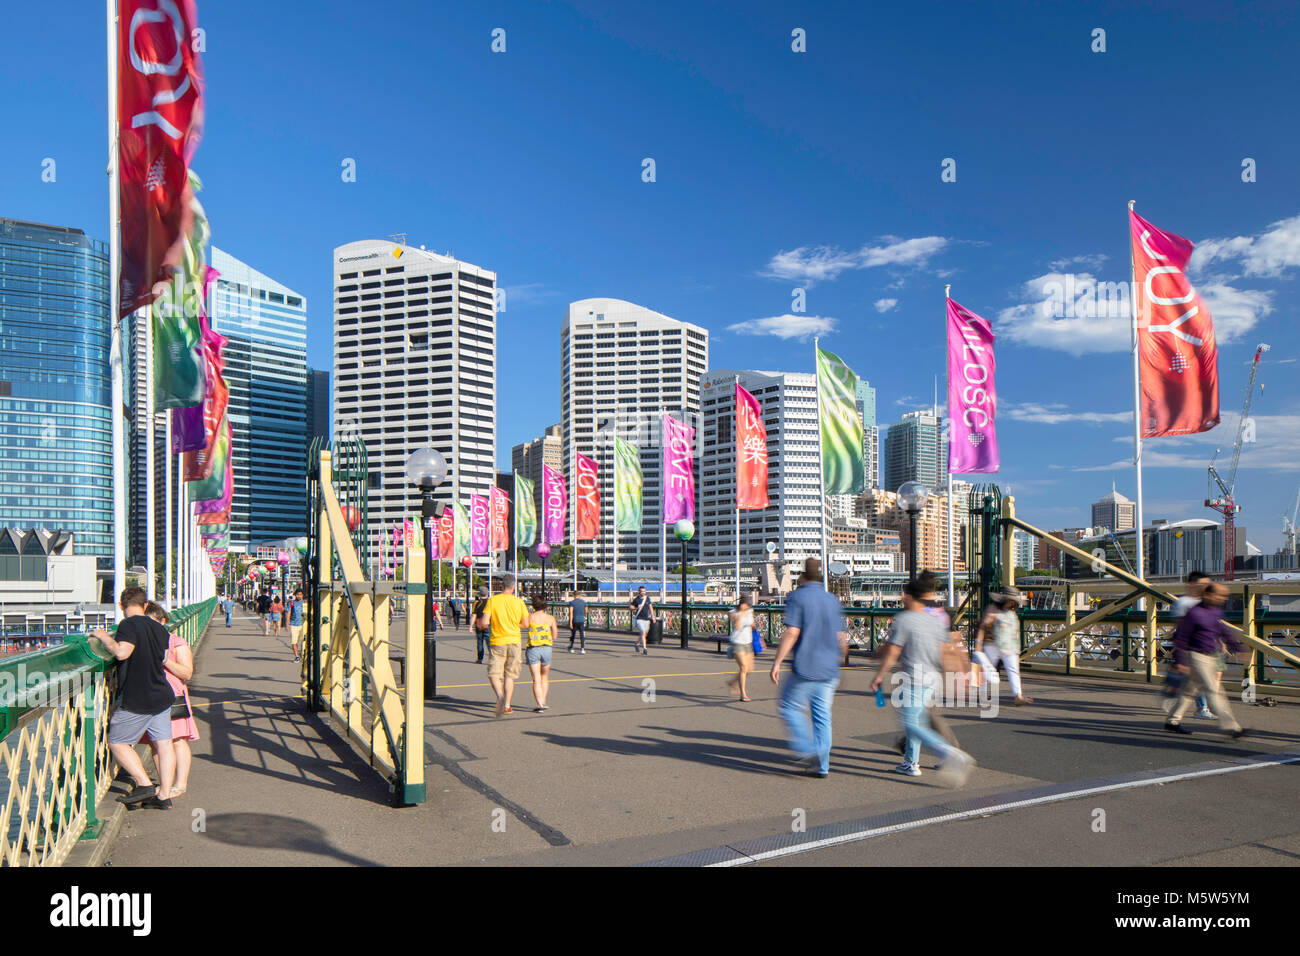 Personnes marchant sur Pyrmont Bridge, Darling Harbour, Sydney, New South Wales, Australia Banque D'Images